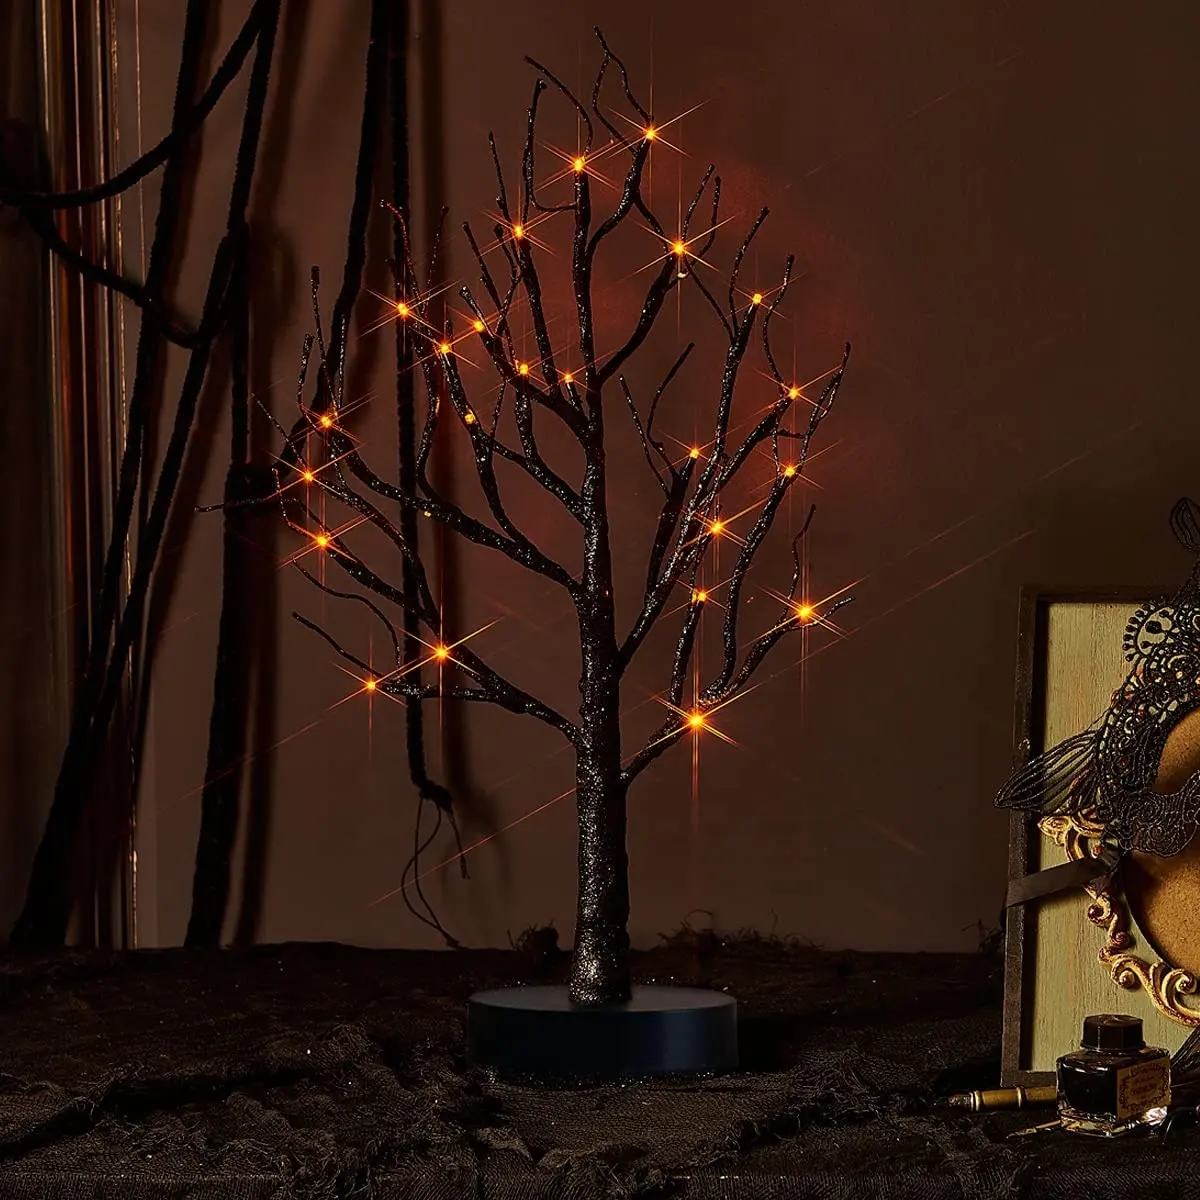 شجرة ديكور للهالوين, شجرة هالوين الديكور 24LED ضوء البرتقال 18 "الارتفاع شبح شجرة سوداء مع الموقت لتقوم بها بنفسك led عطلة ضوء